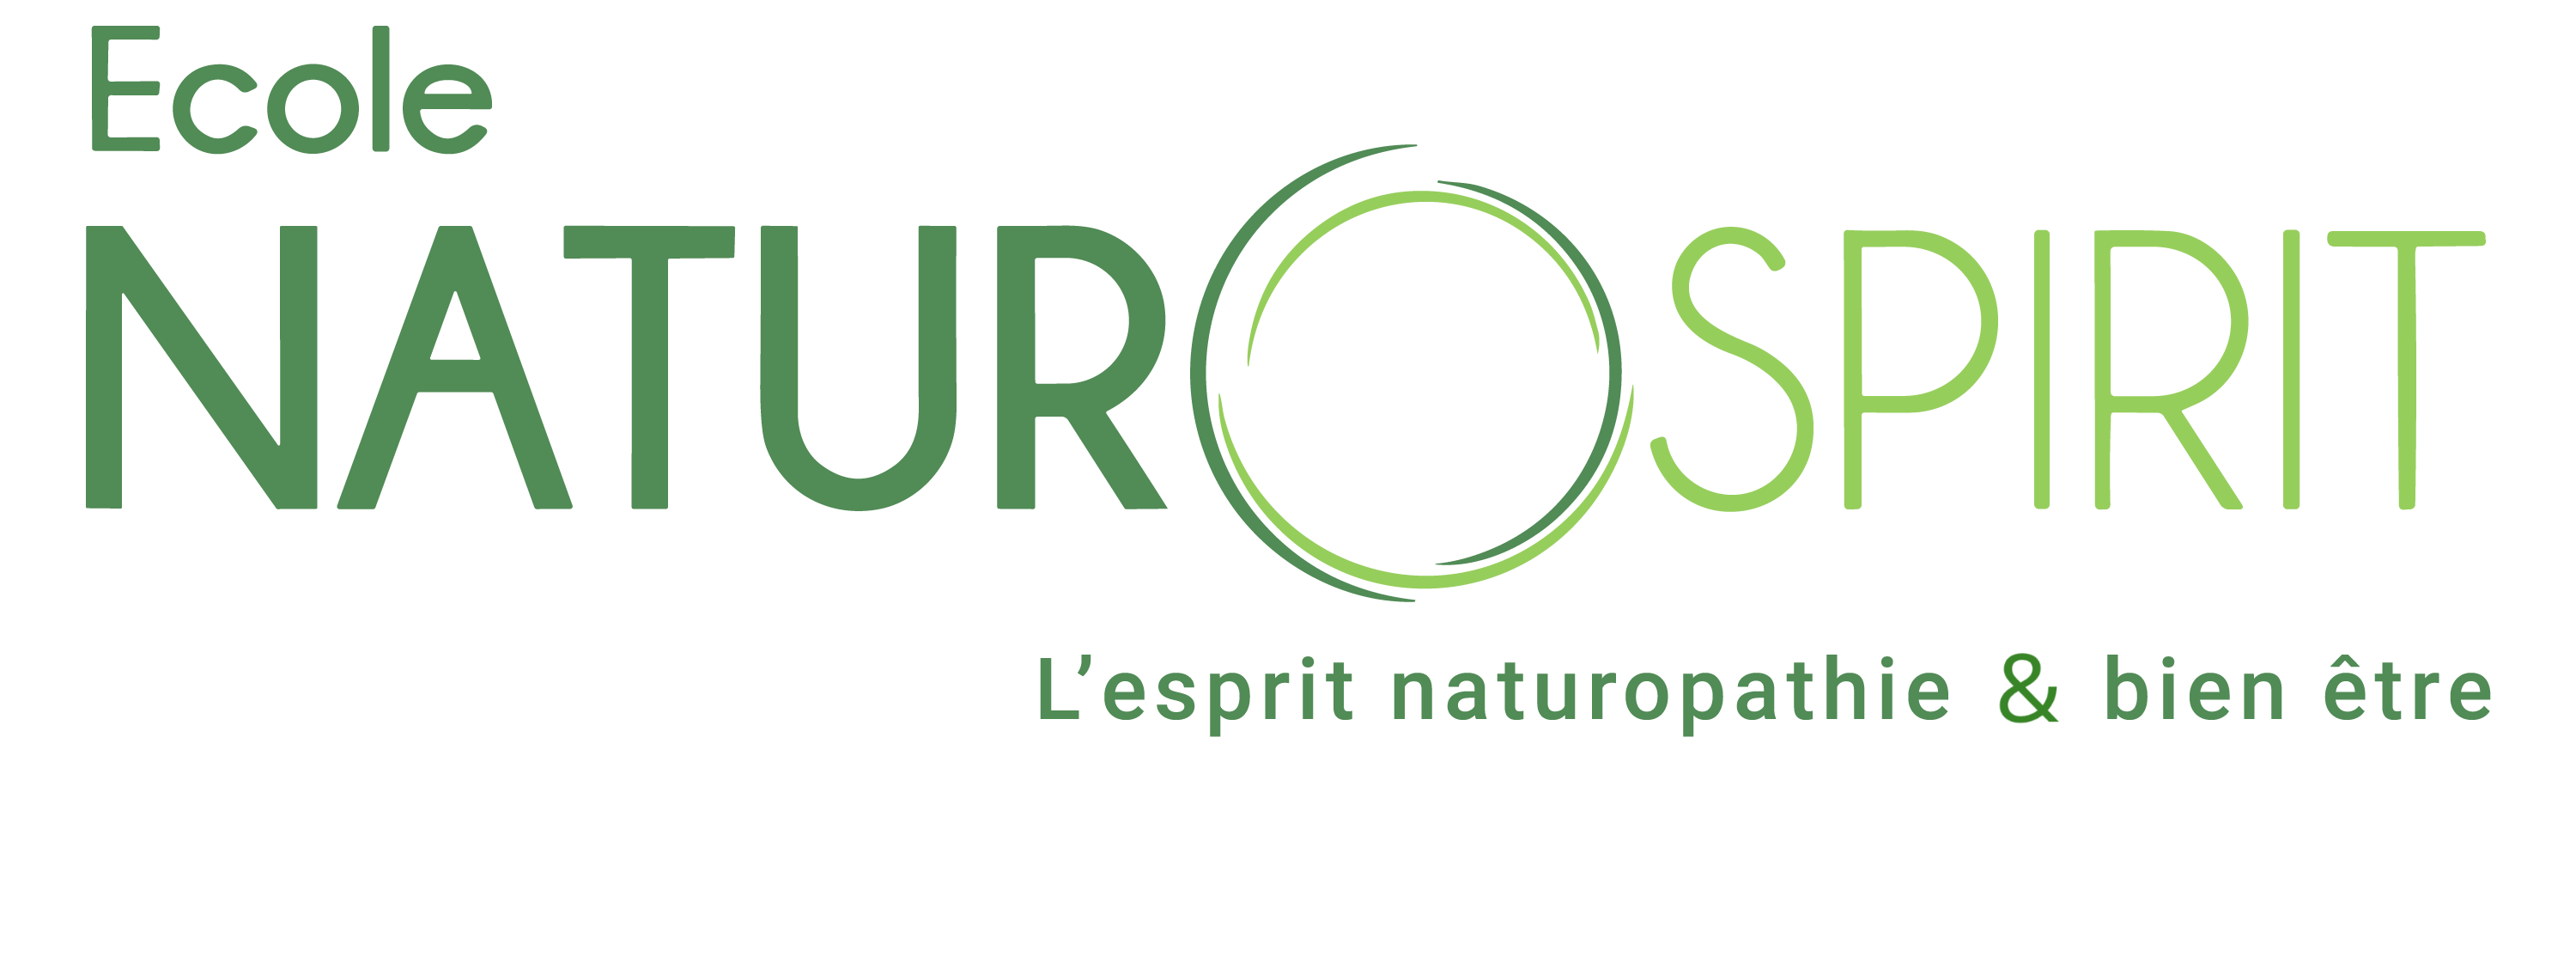 Logo Phrase ecole NaturoSpirit